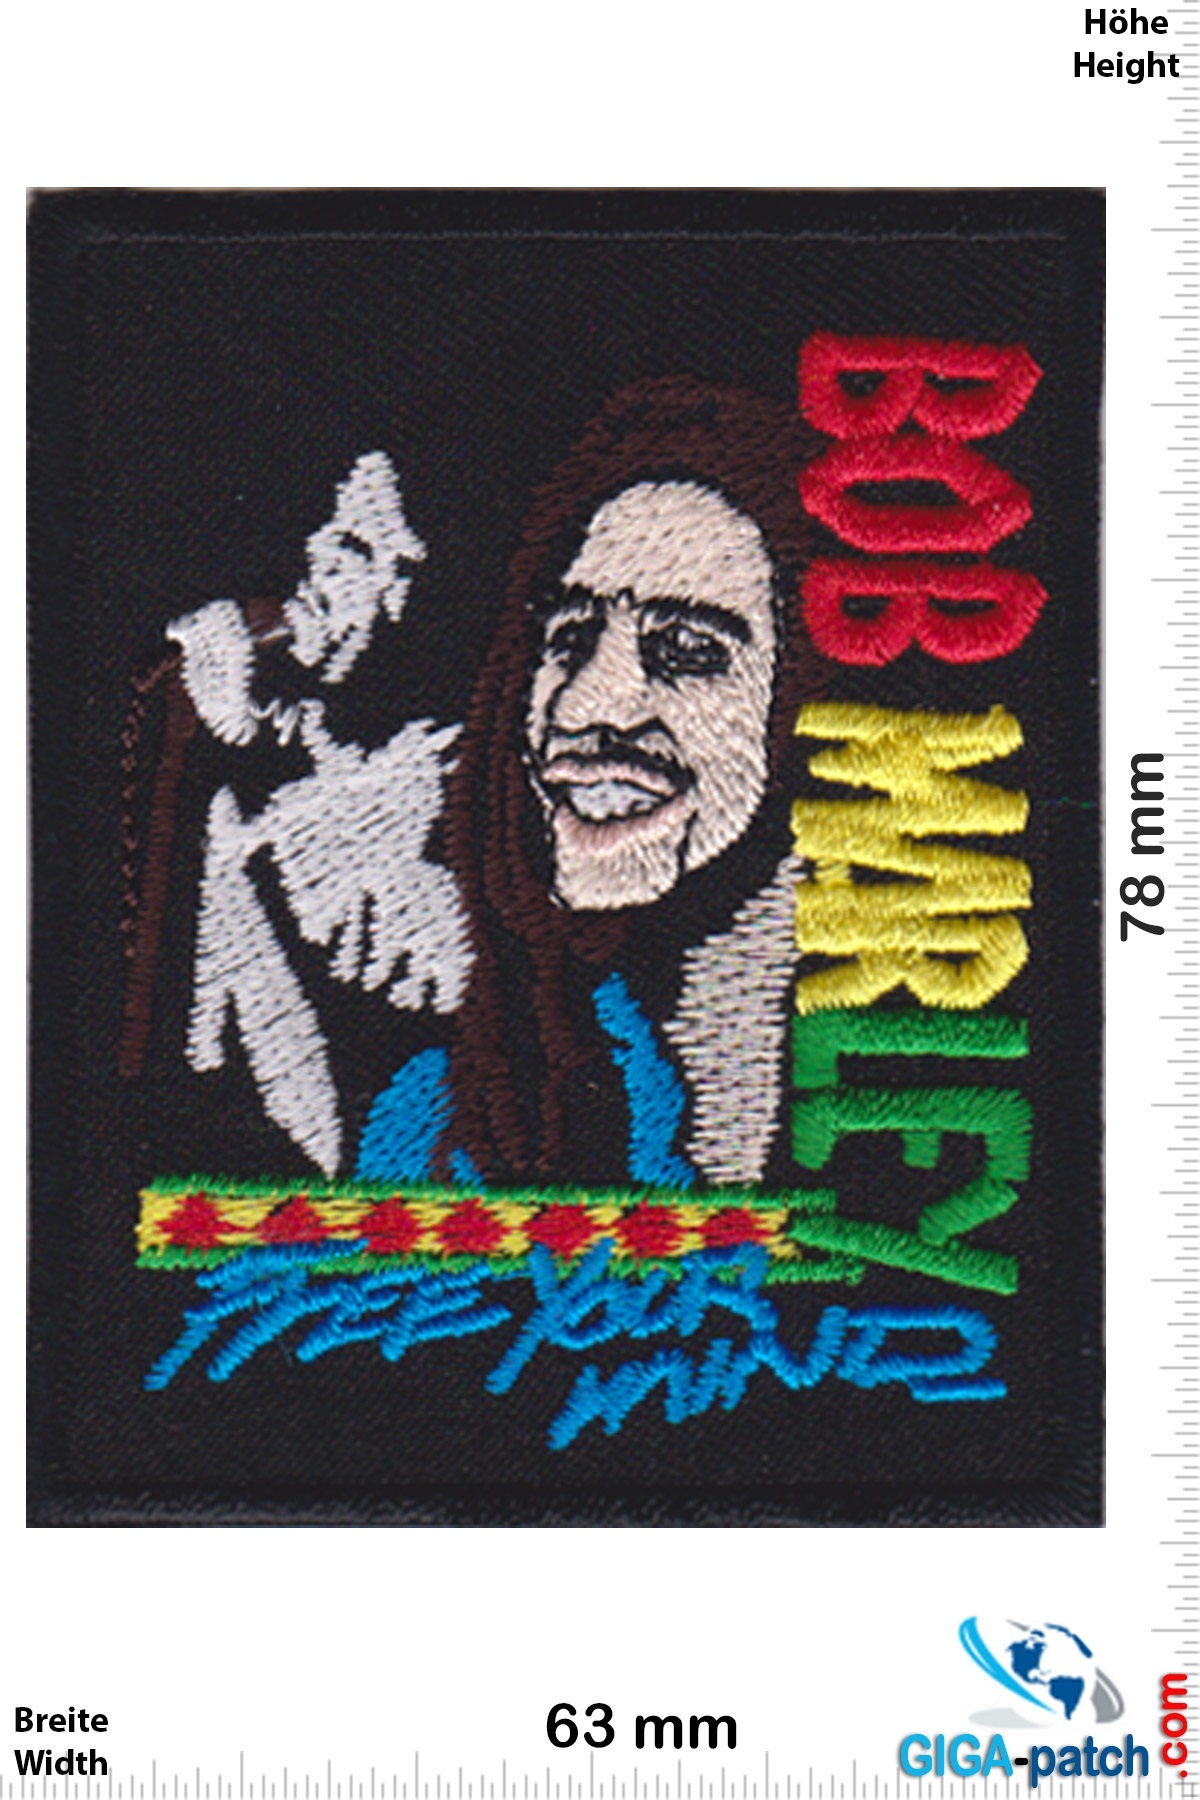 Bob Marley  Bob Marley - Free your Mind